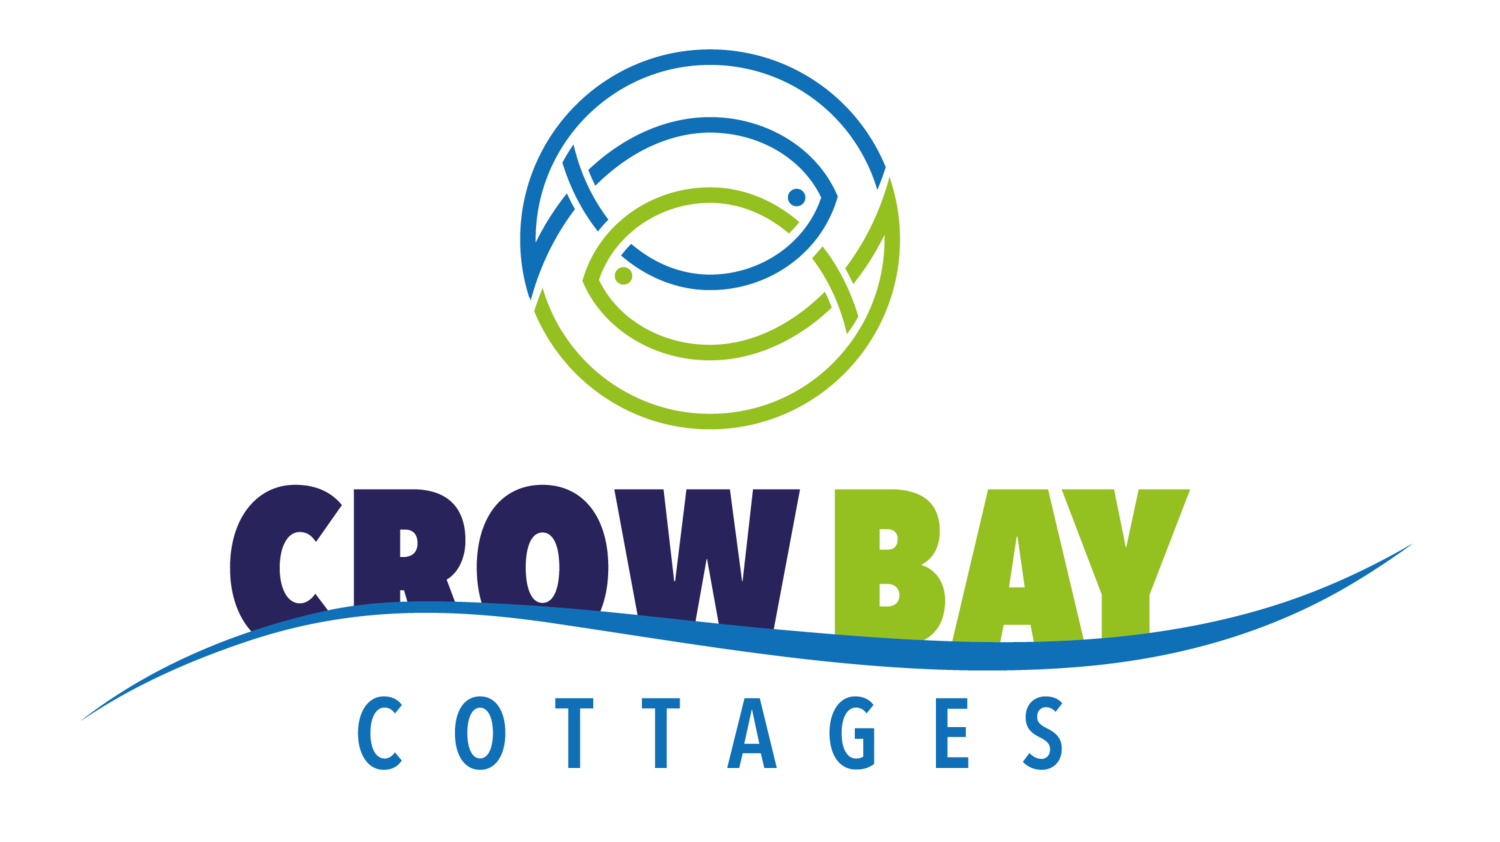 Crow Bay Cottages - Bobs Lake - Cottage Rental